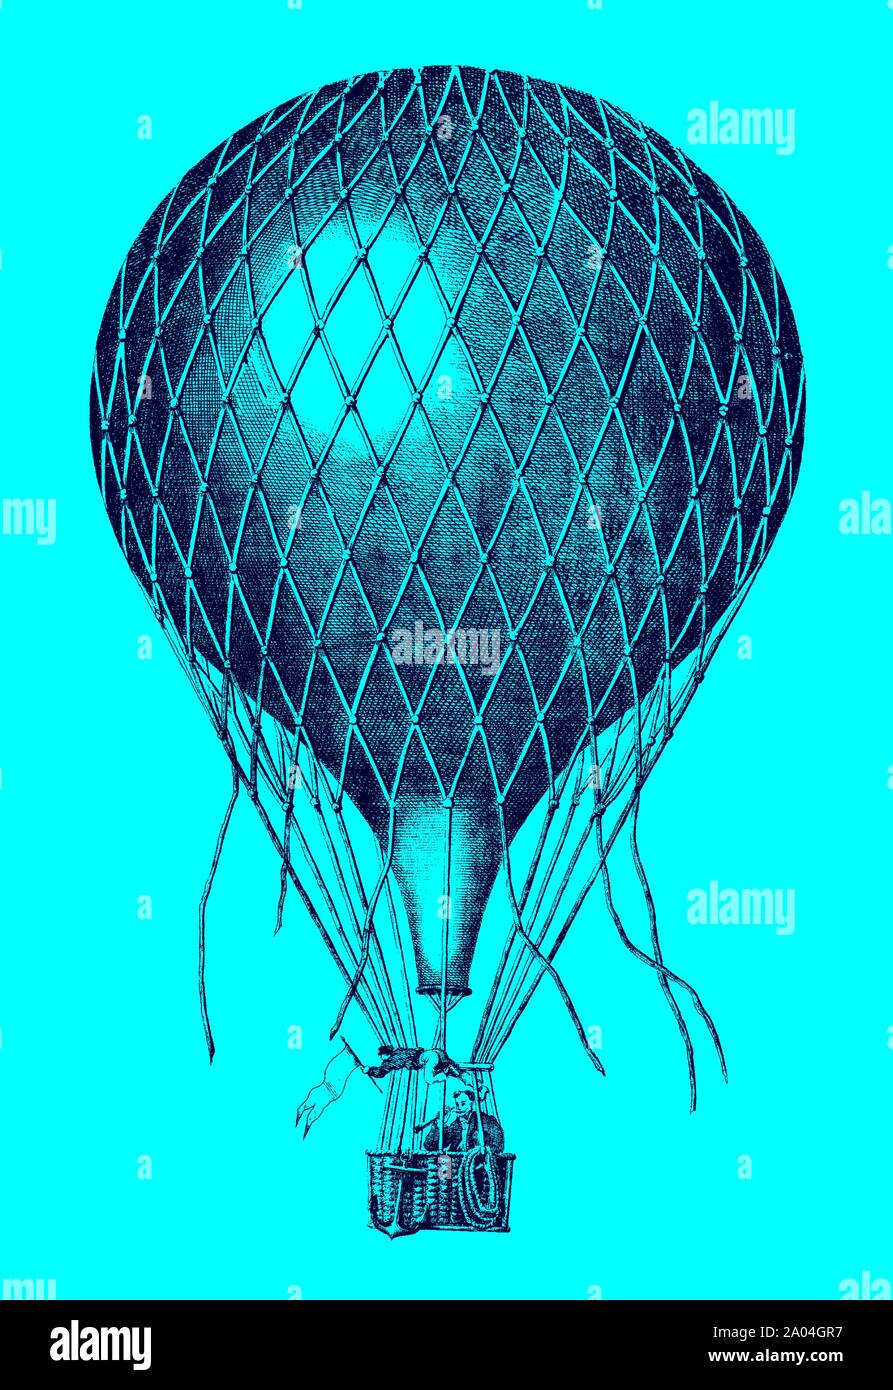 Historische ballon Fliegen mit zwei Männer an Bord vor einem blauen Hintergrund. lllustration nach einer Lithographie aus dem 19. Jahrhundert. Editierbare Layer Stock Vektor